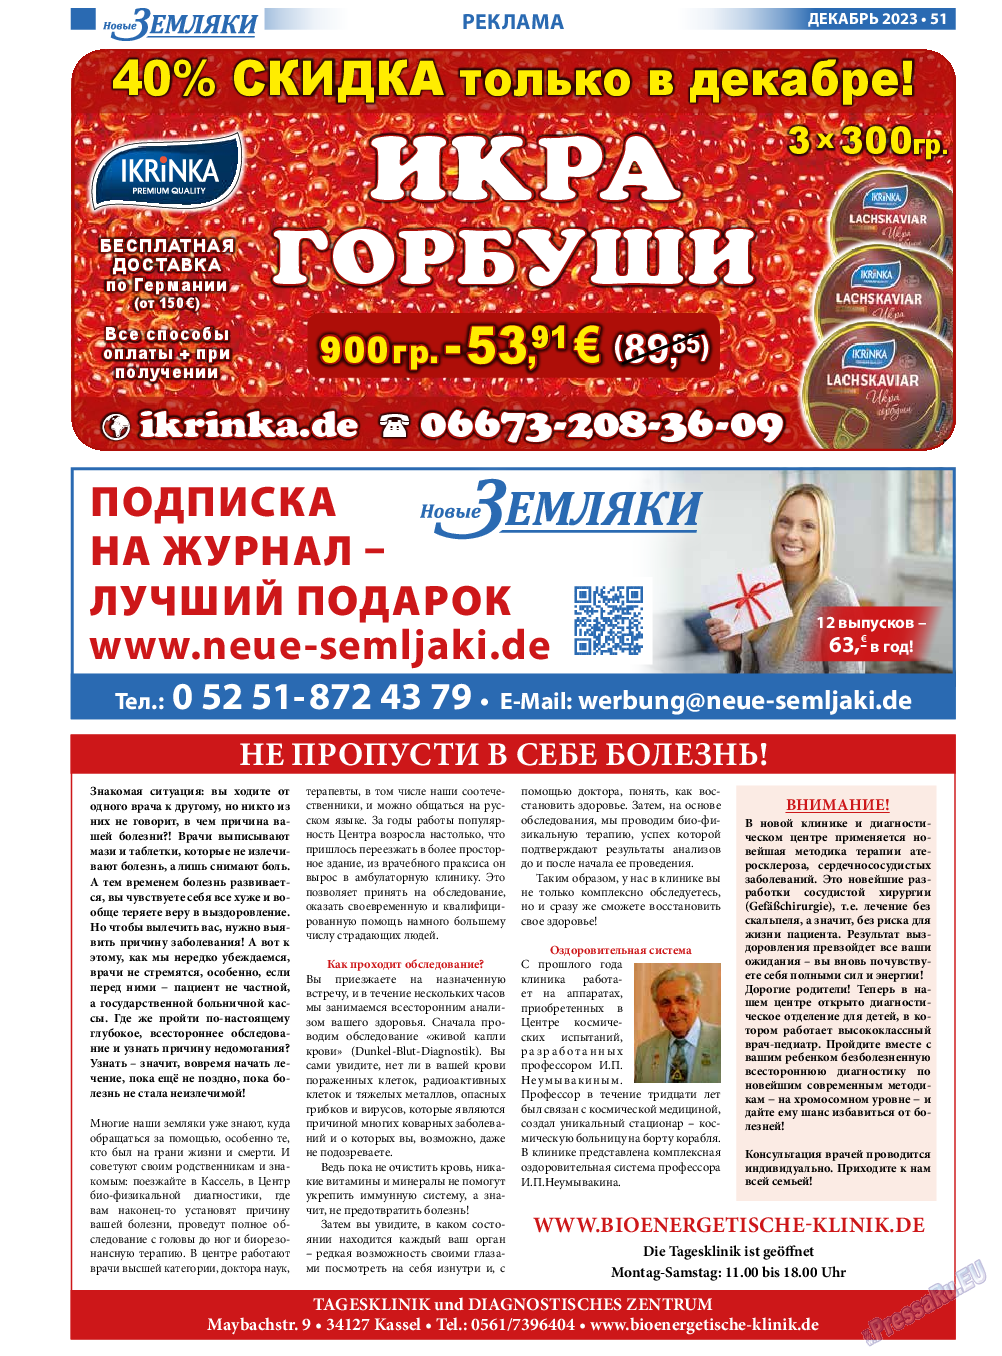 Новые Земляки, газета. 2023 №12 стр.51